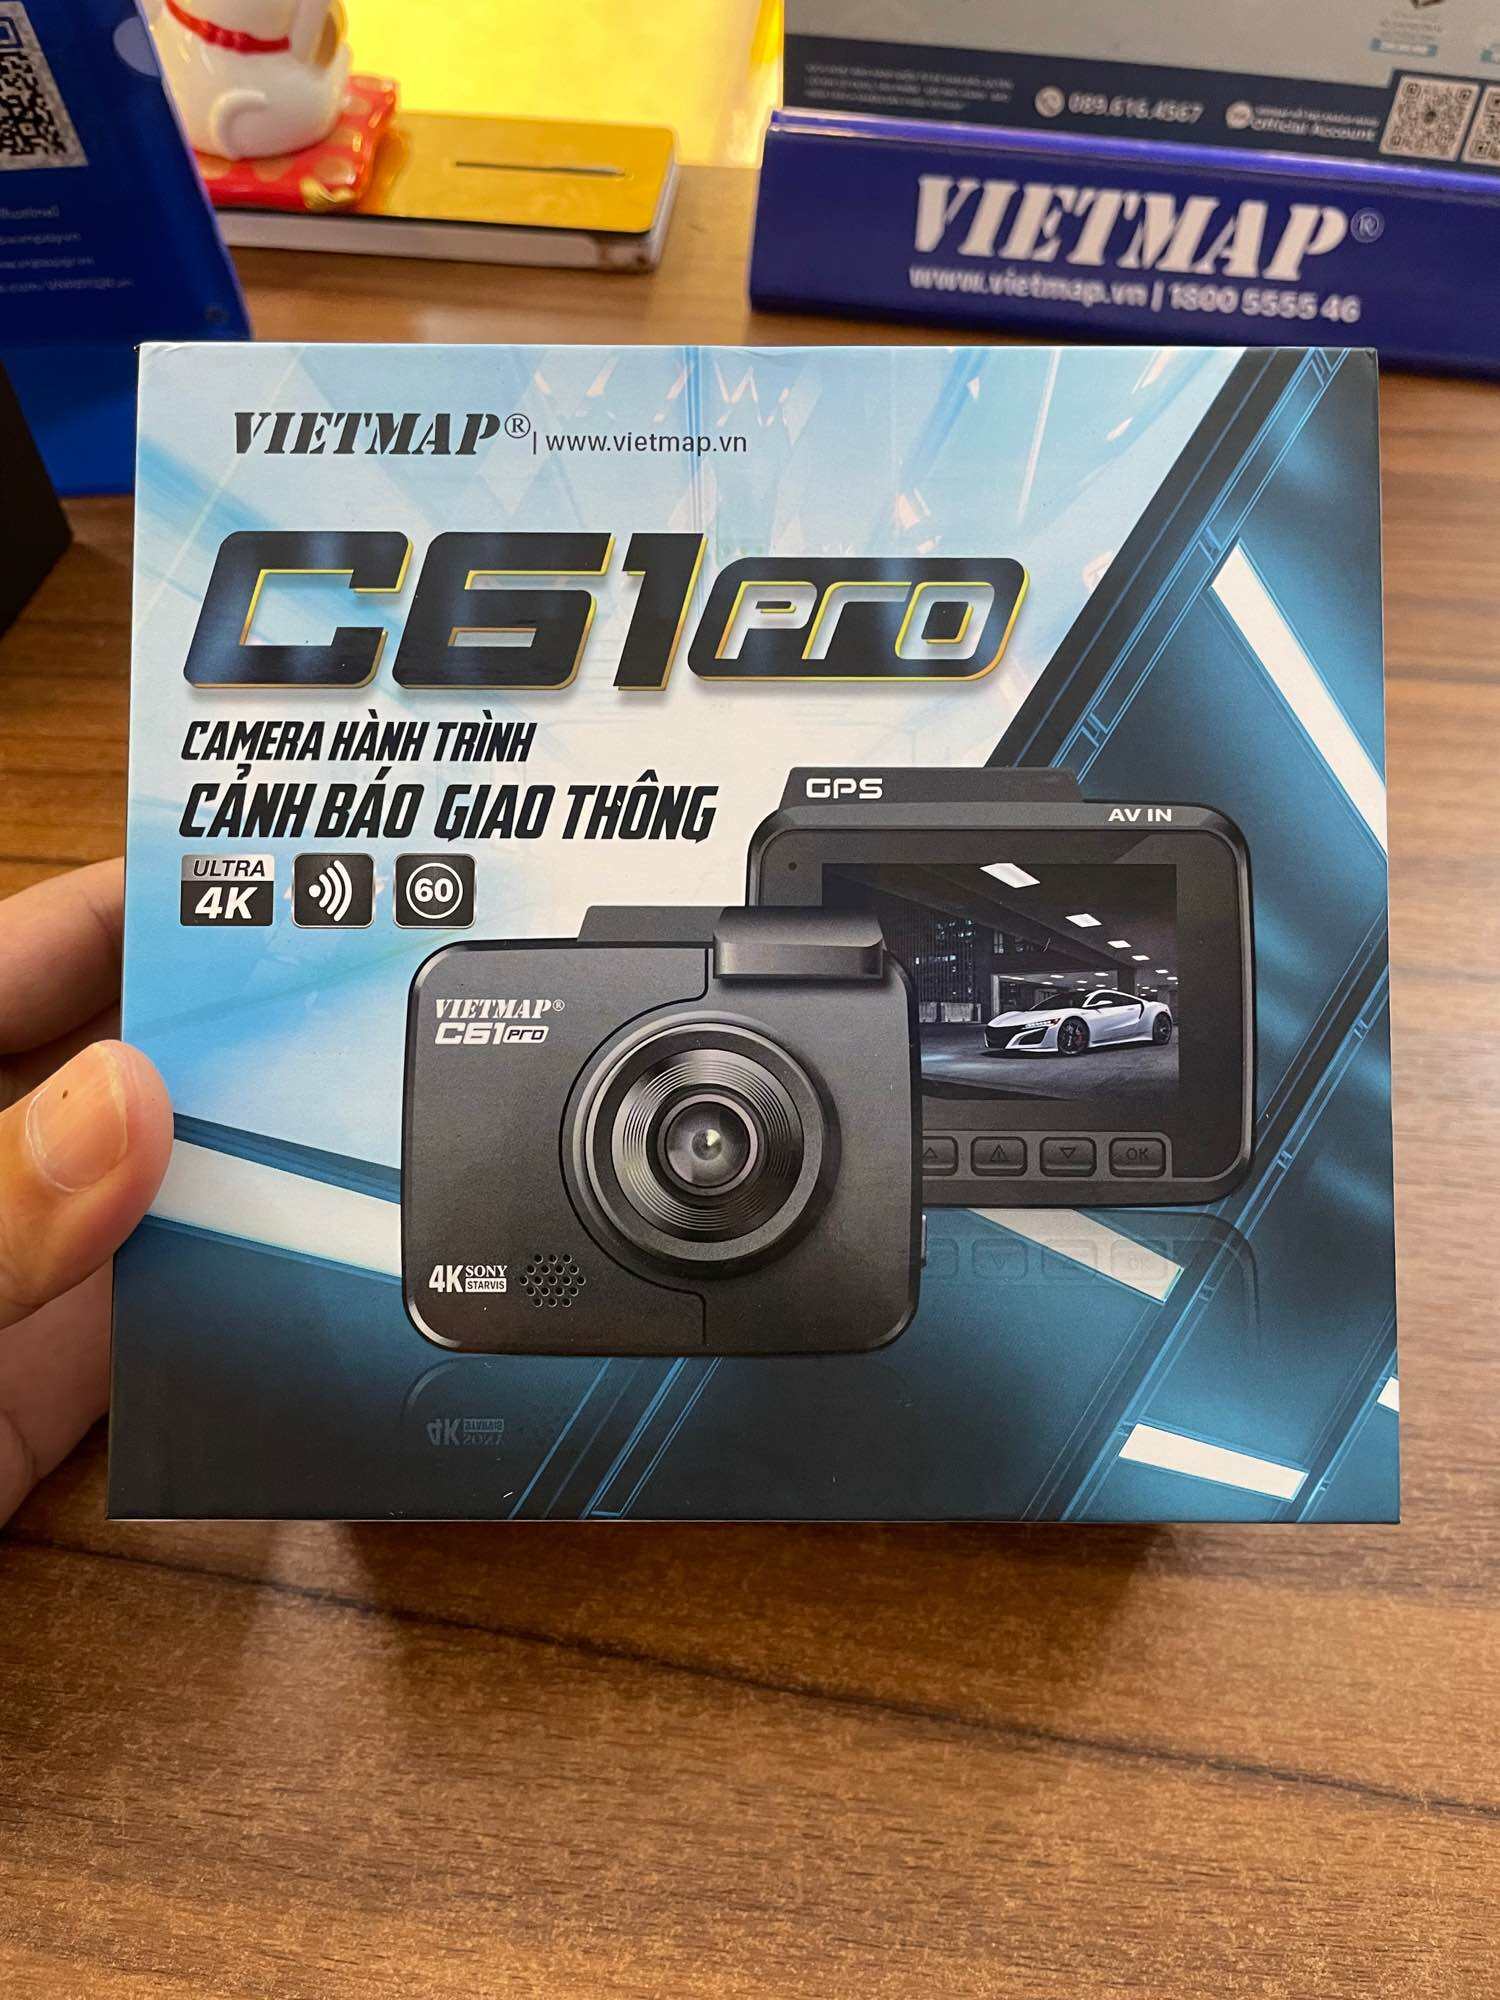 Kèm Thẻ Nhớ 32GB Camera Hành Trình Vietmap C61 Pro